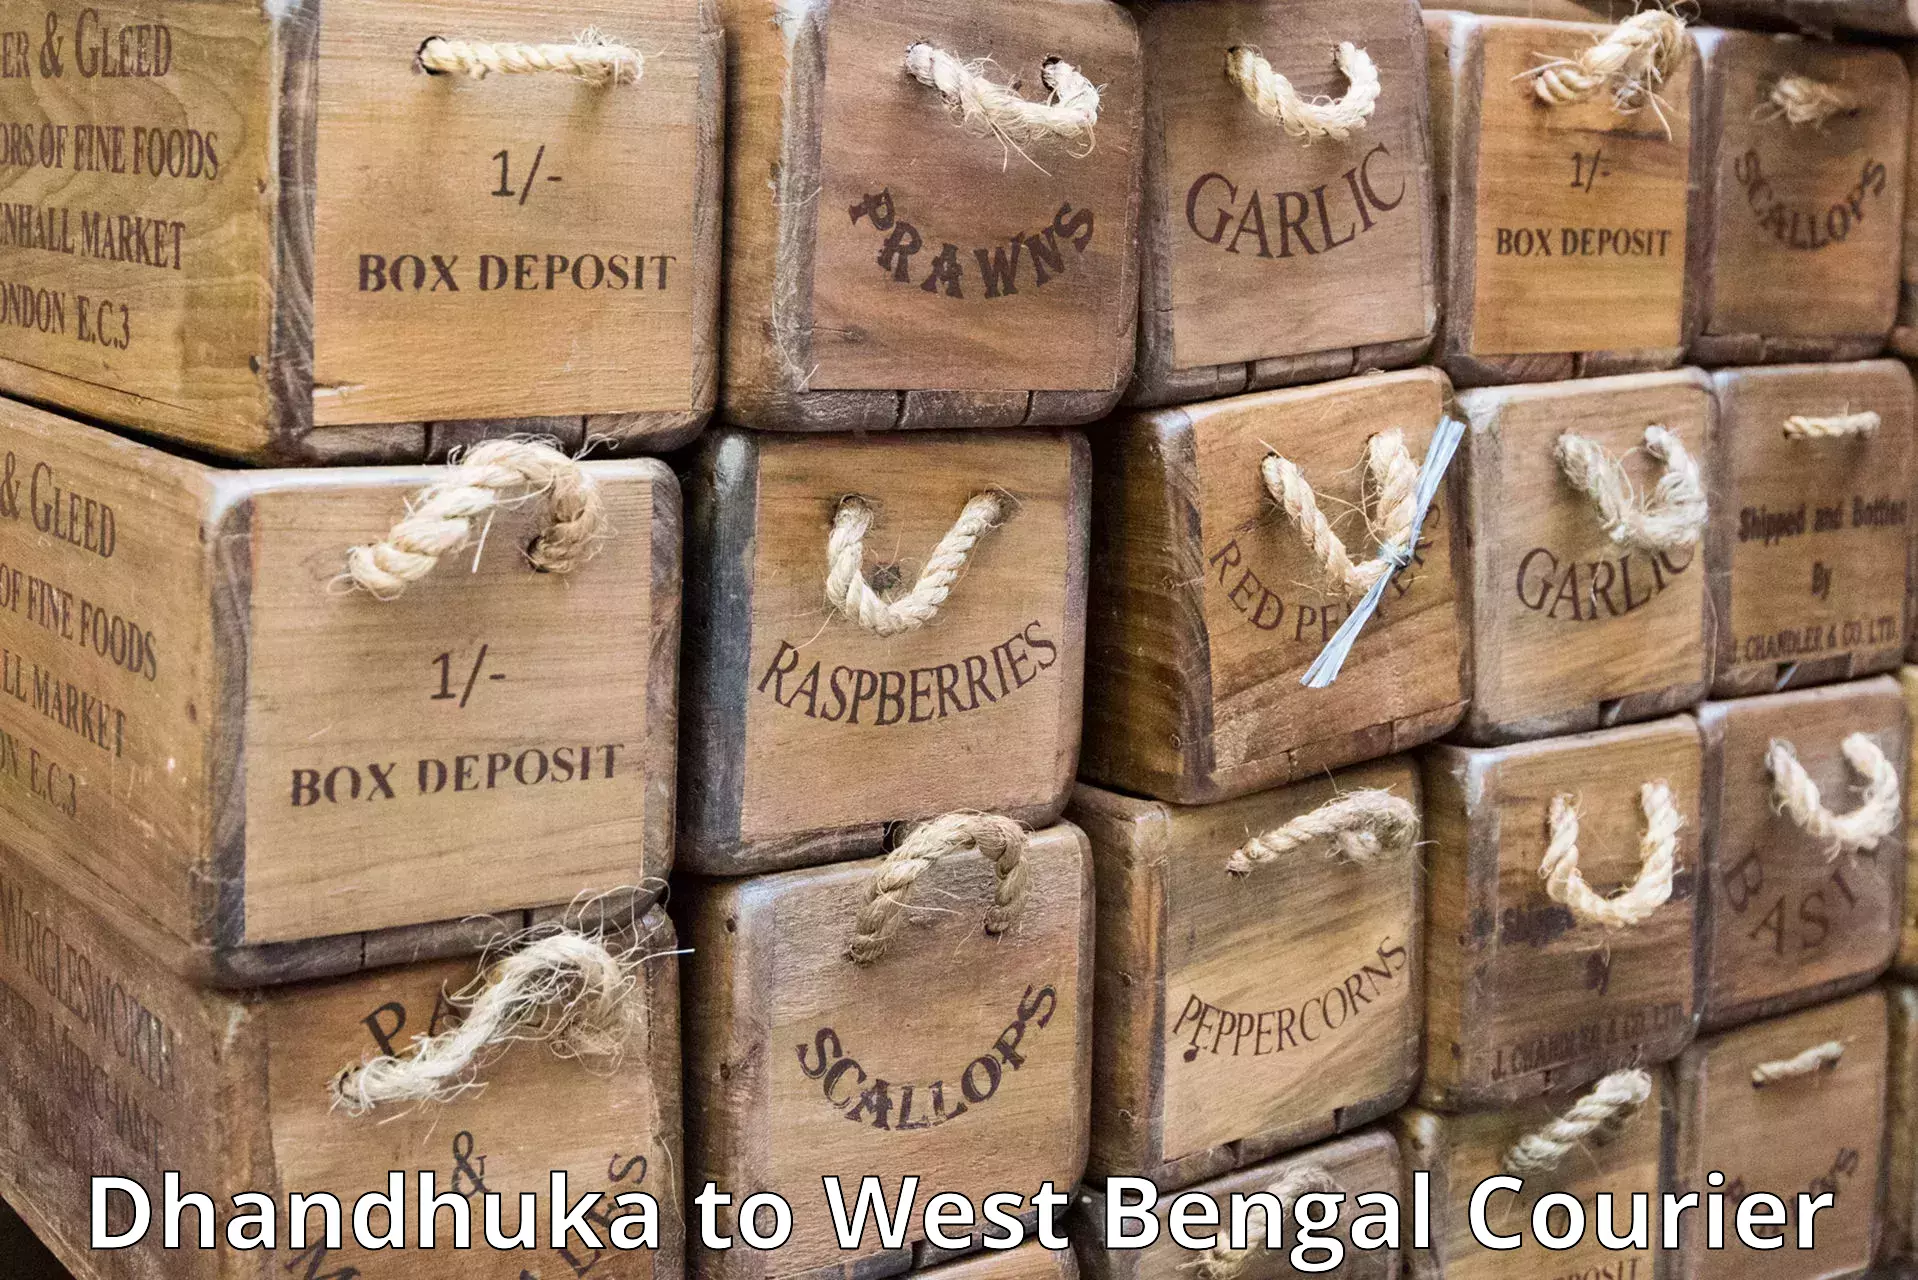 Express postal services Dhandhuka to Puruliya